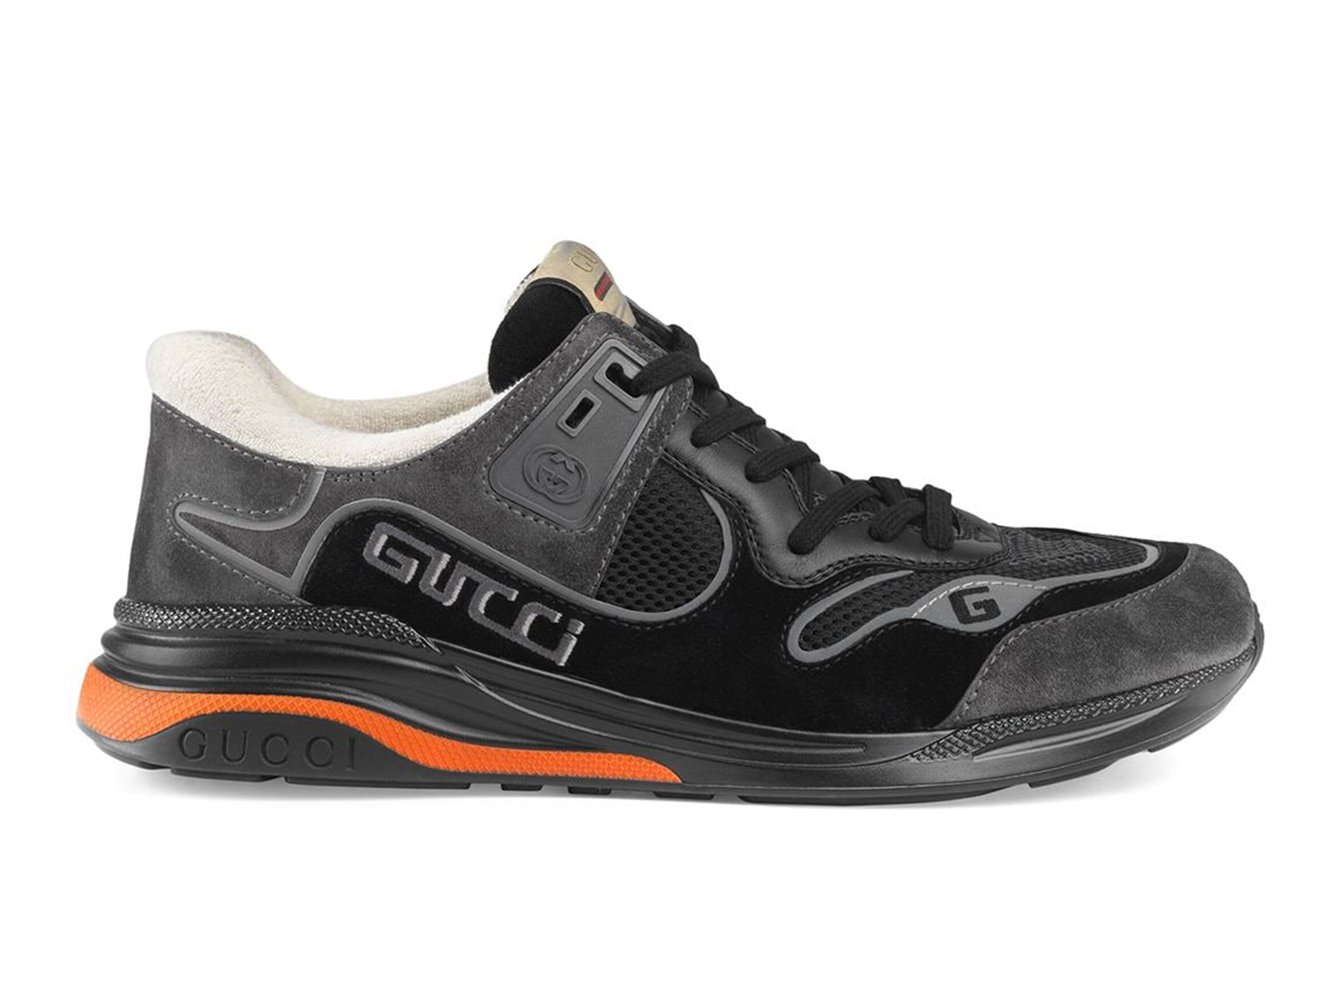 Gucci Ultrapace Black White Orange sneakers